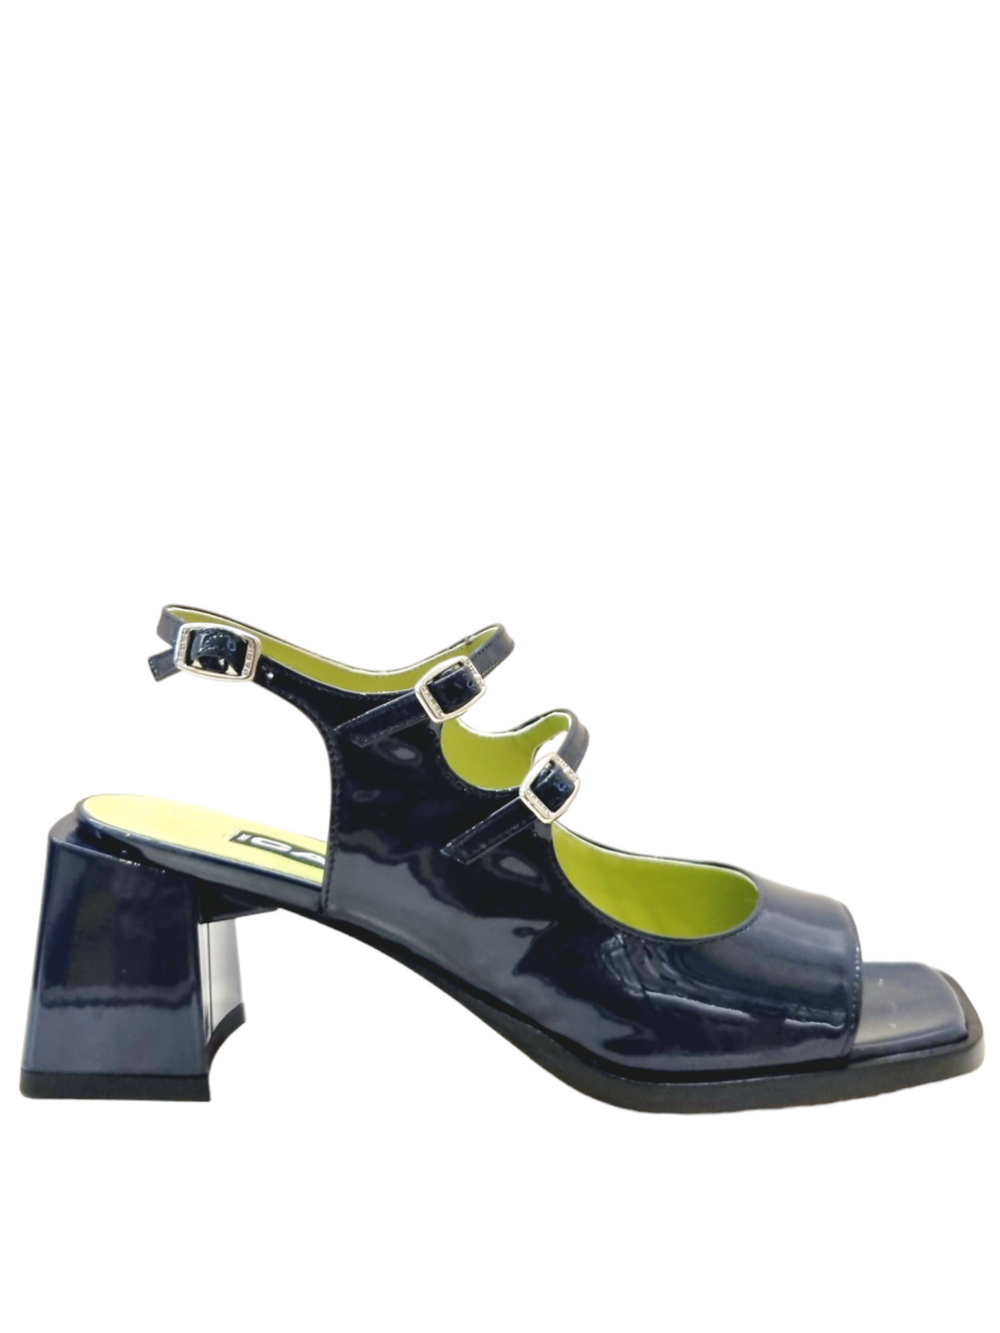 Bercy Navy Patent Leather Sandals - Carel Paris - Liberty Shoes Australia